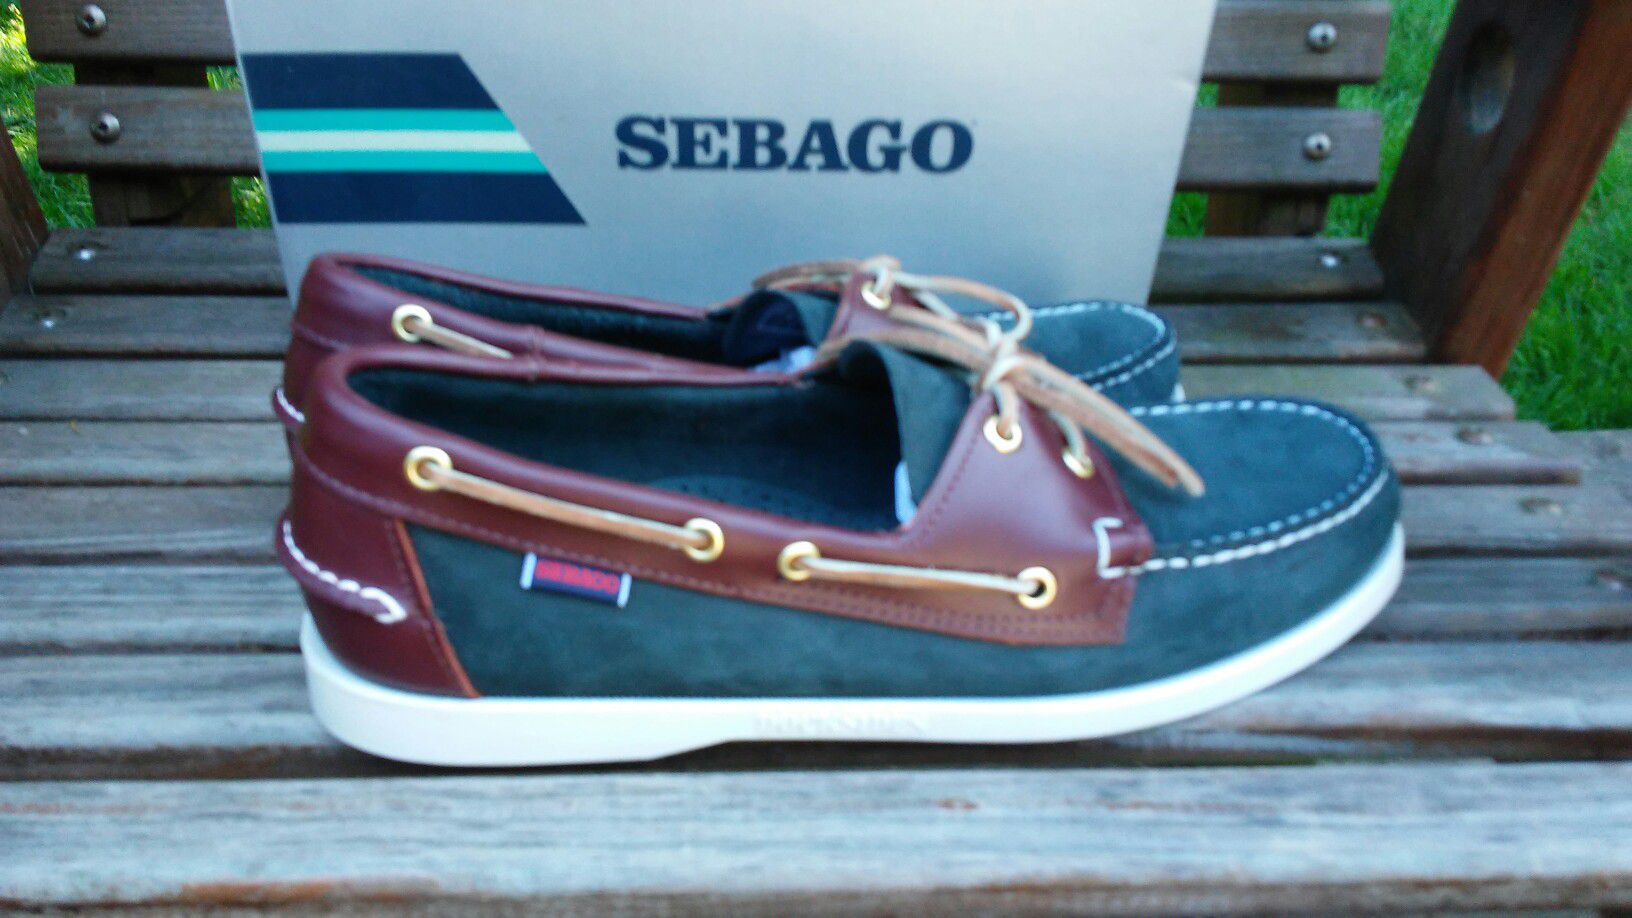 NEW! Sebago Men's Spinnaker Boat Shoes size 10